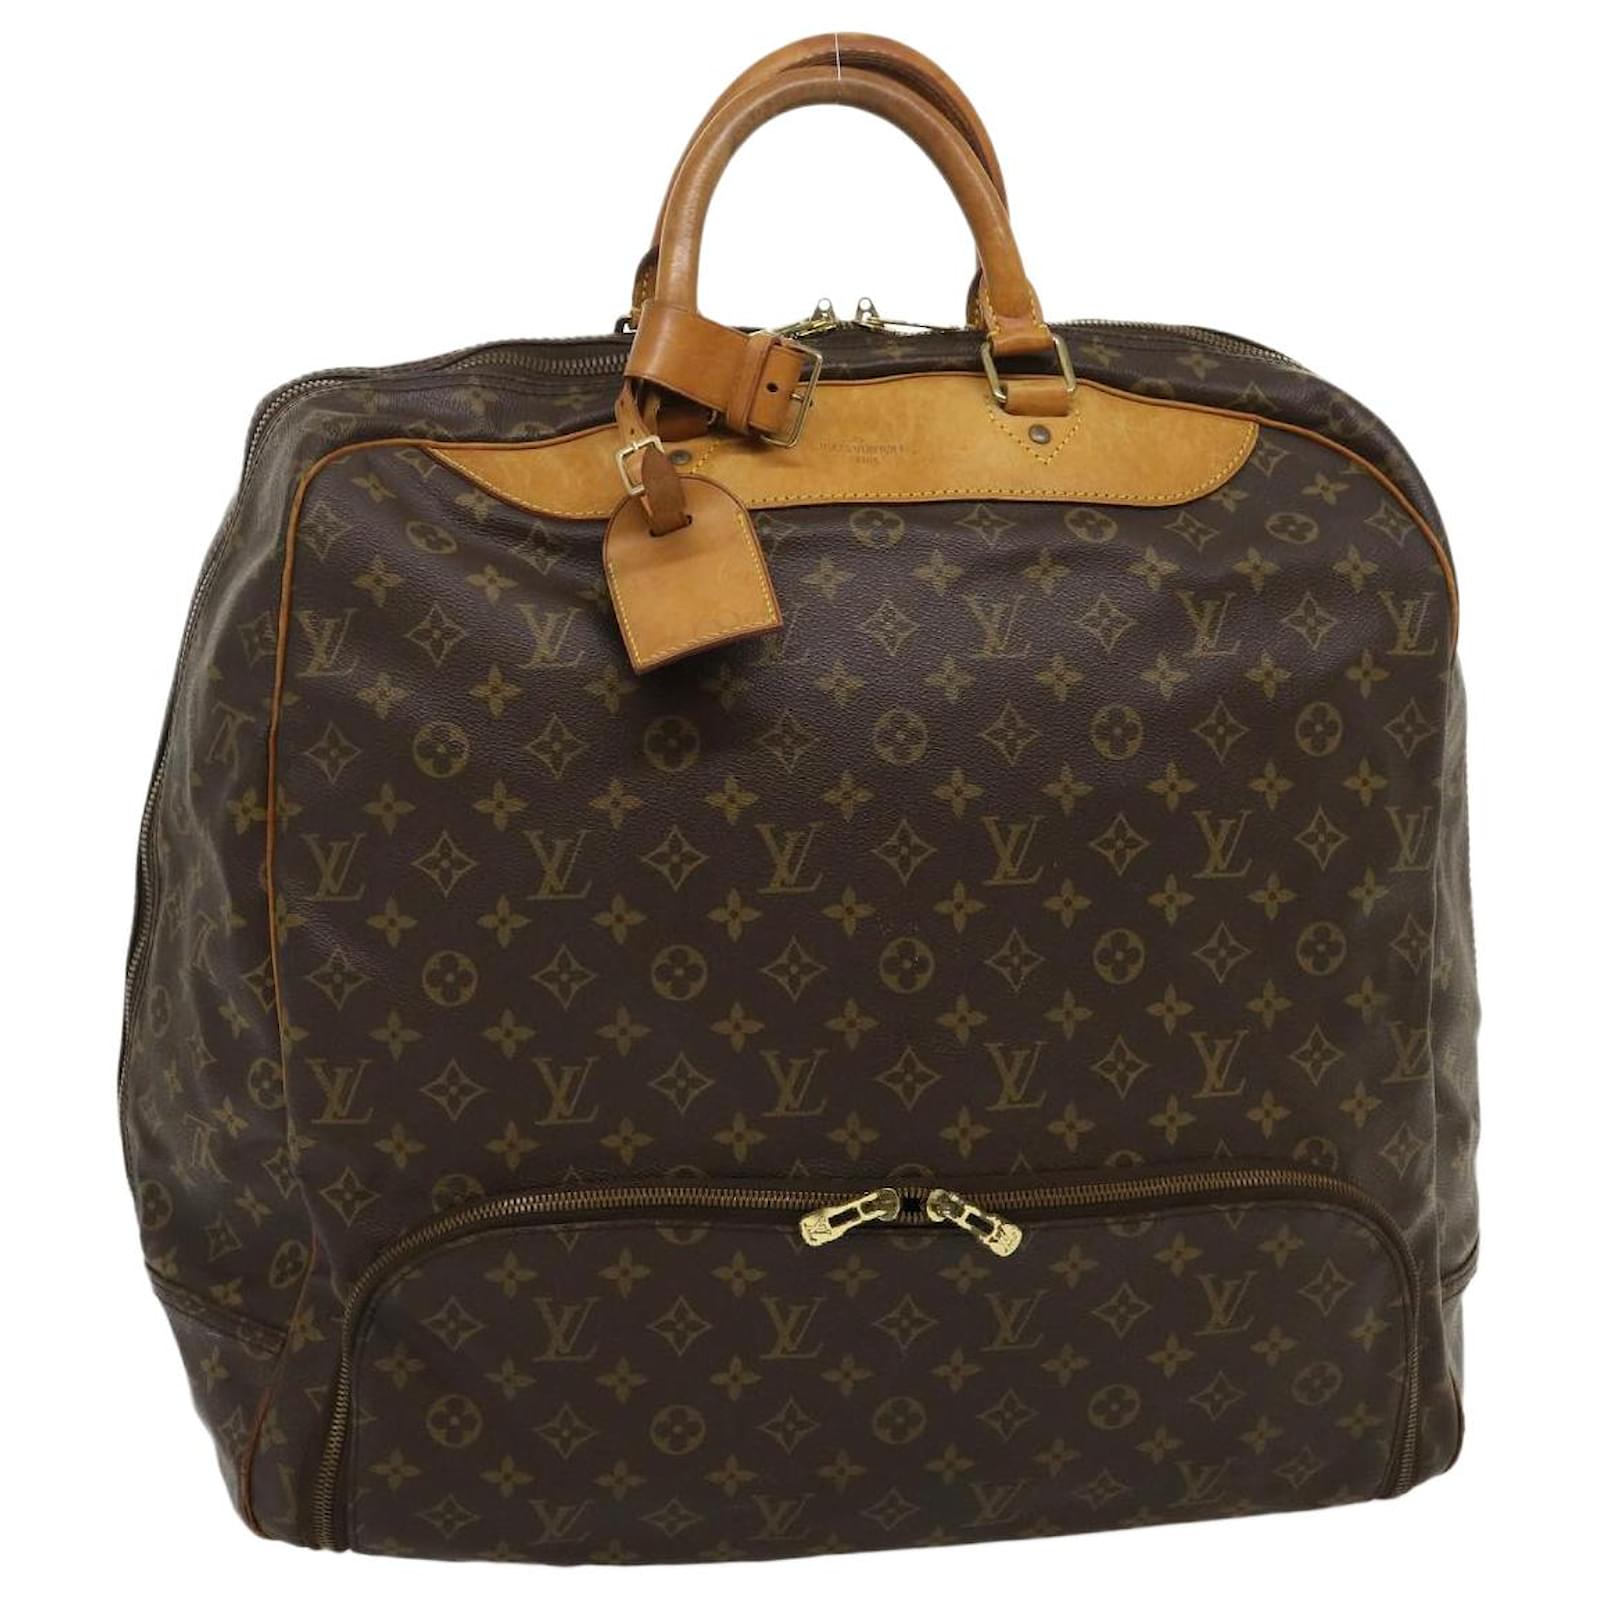 Louis Vuitton Evasion Boston Travel Bag